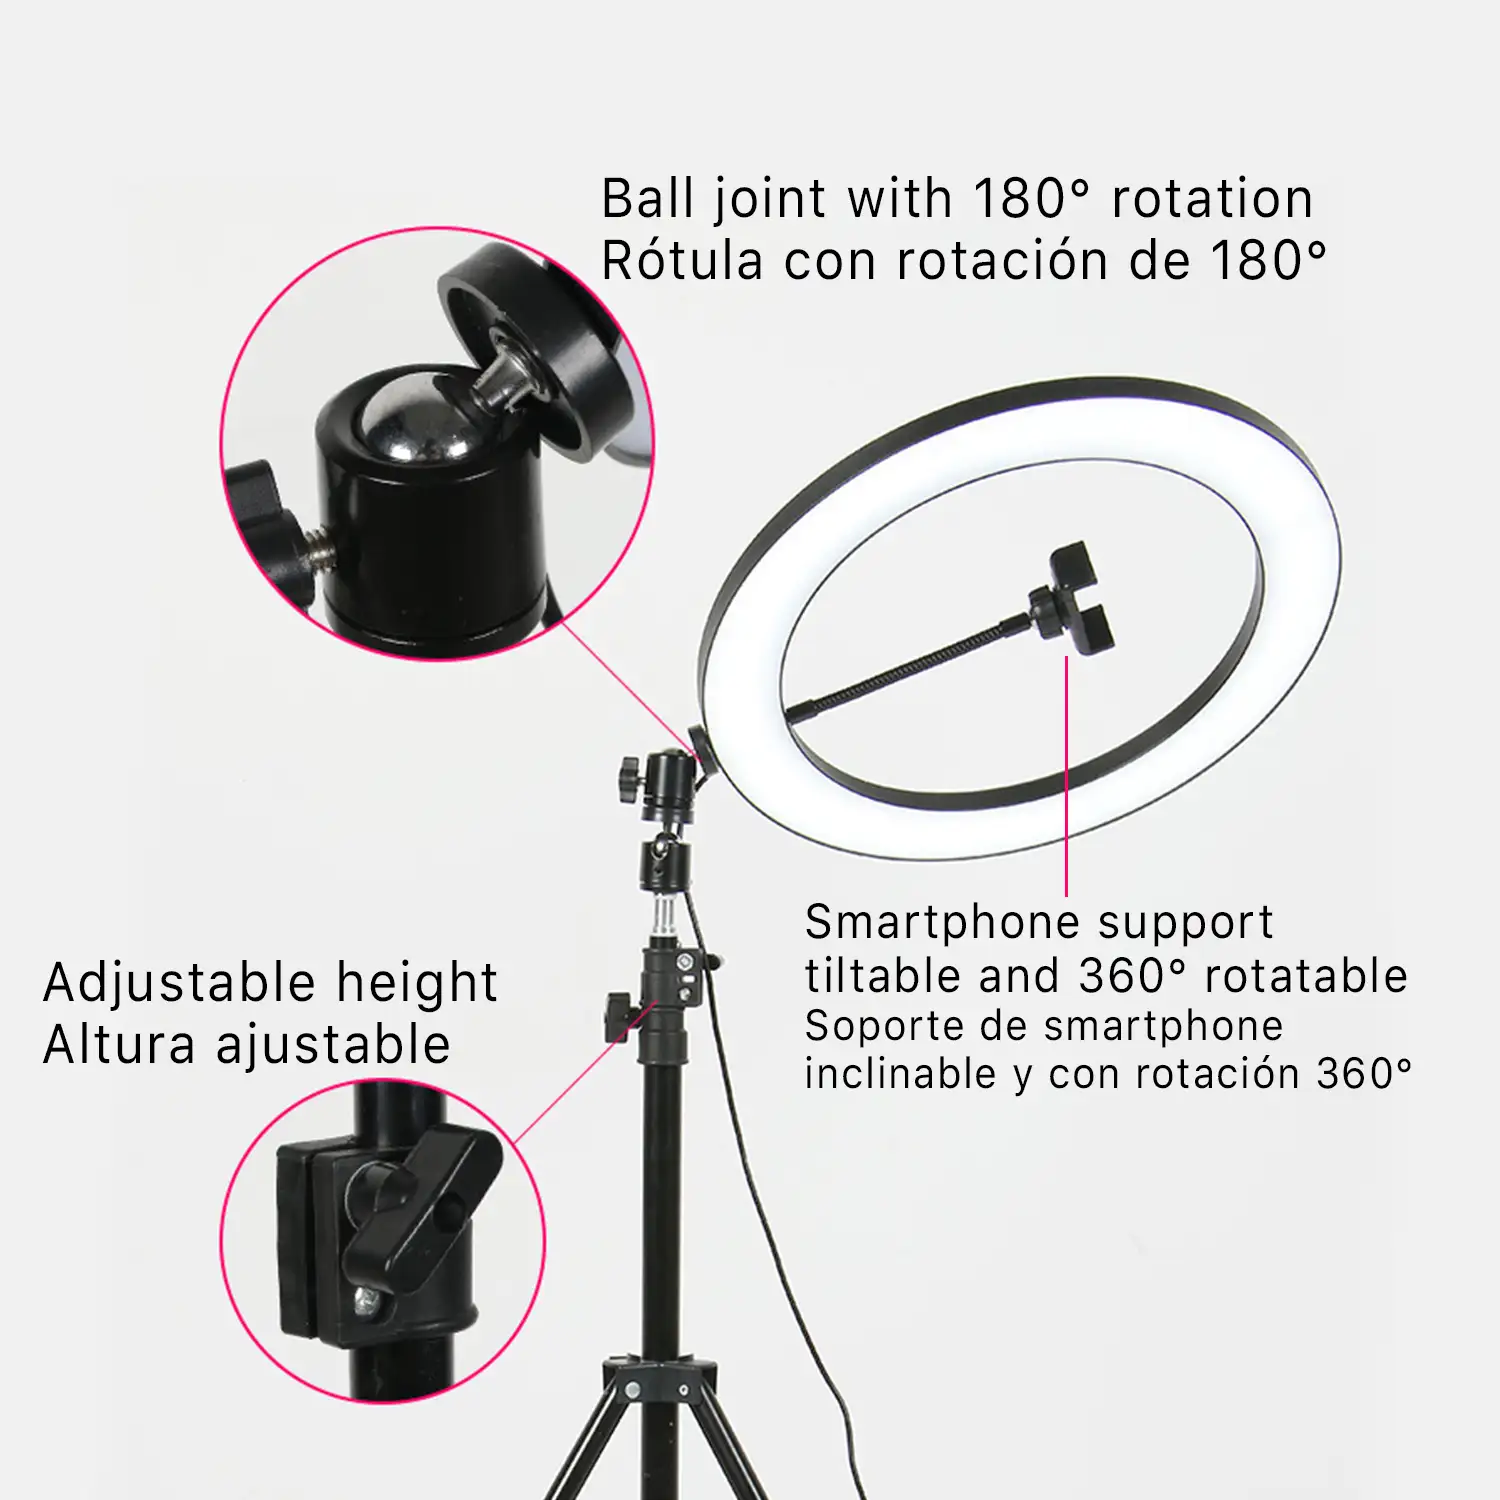 Pack de iluminación para móvil: anillo led de estudio de 26cm, tripode extensible de 145cm y soporte para Smartphone. 10 intensidades y 3 temperaturas de color.